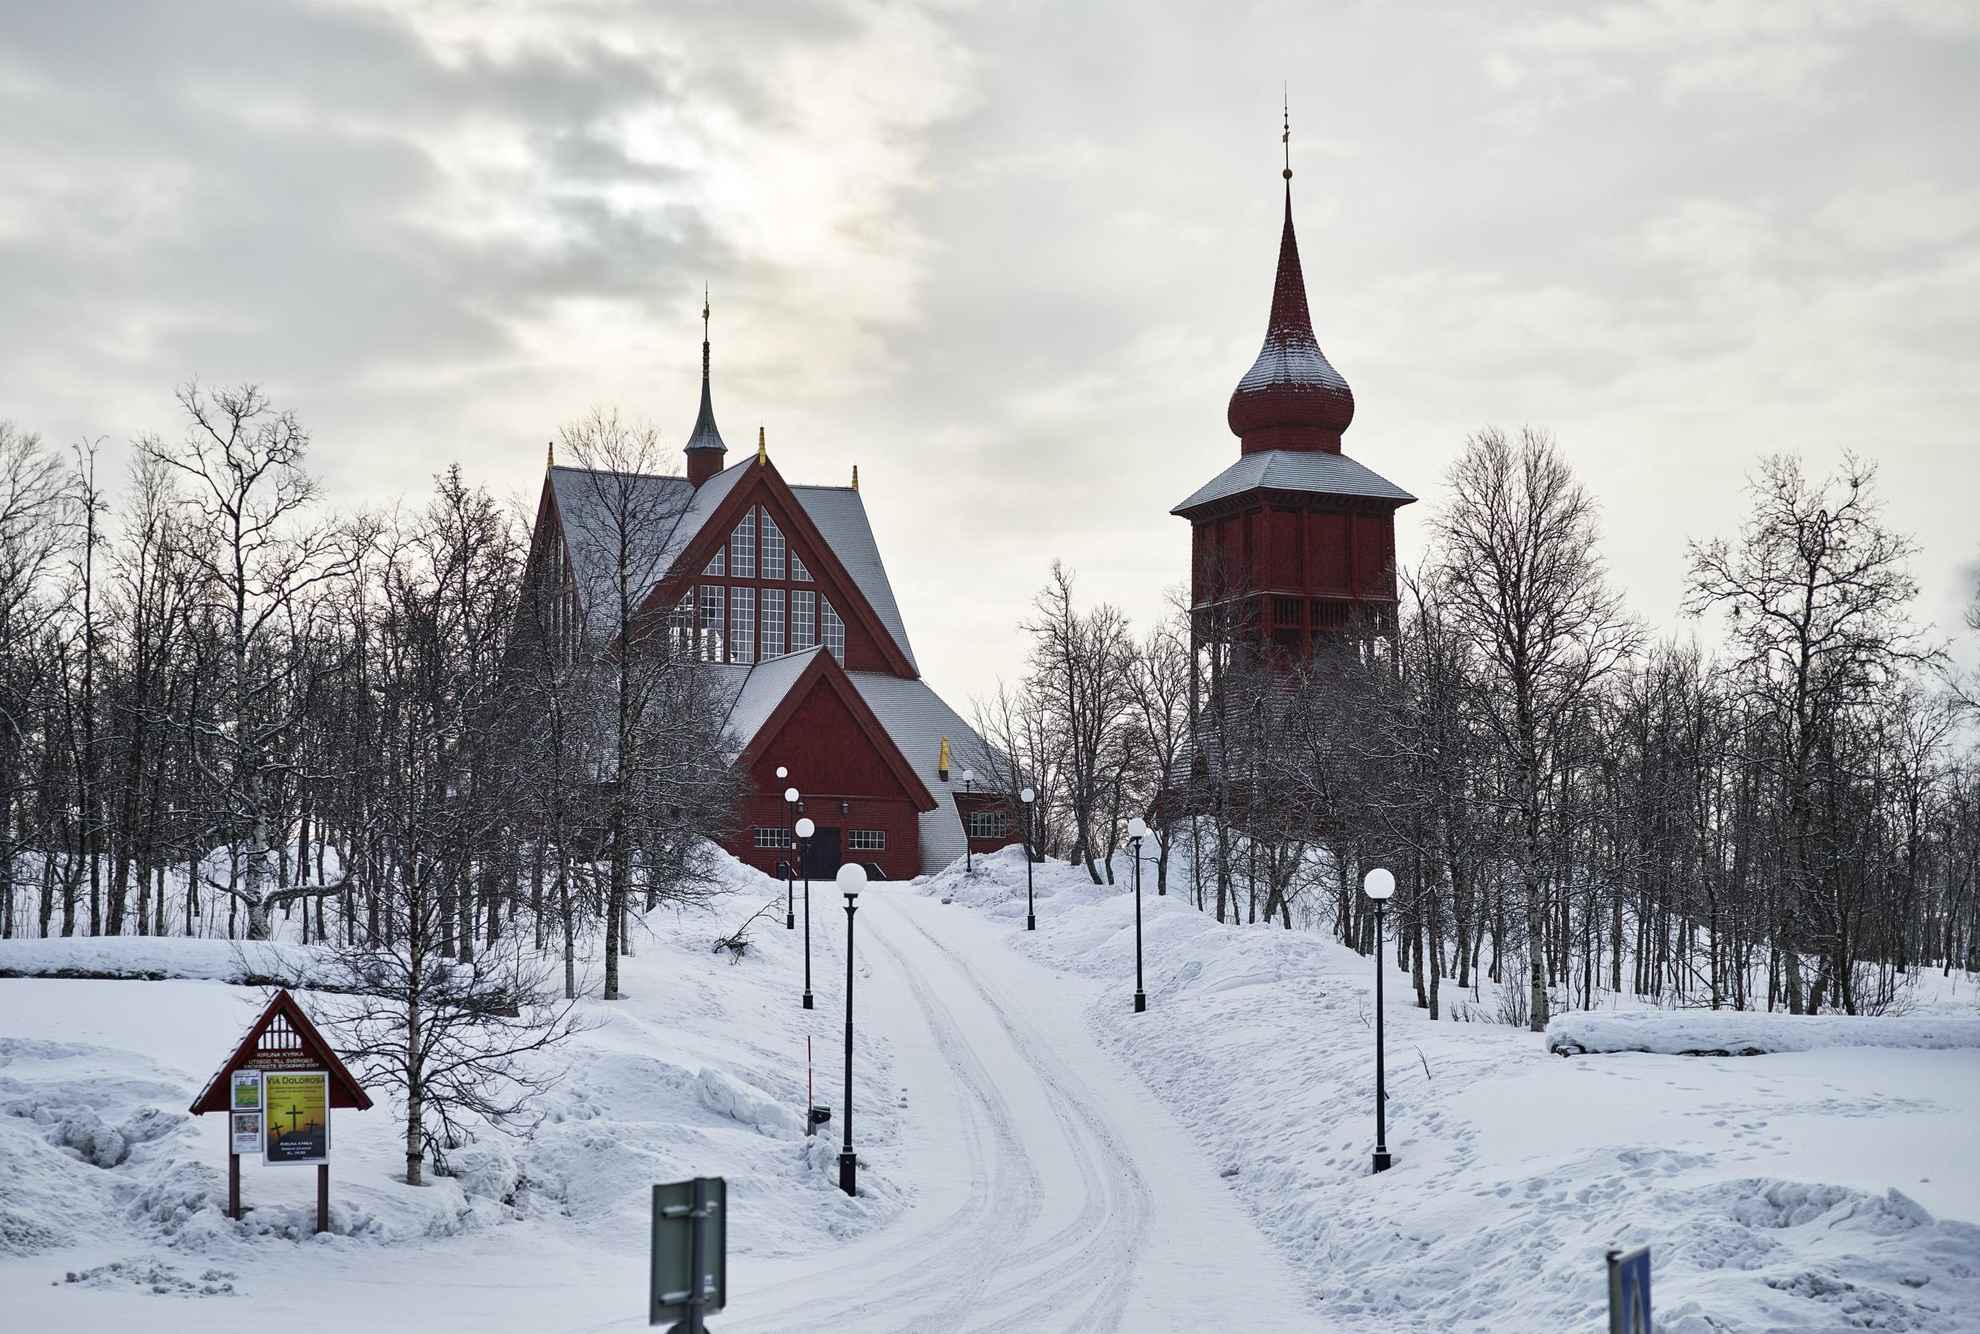 Die Kirche von Kiruna ist ein Holzbau mit einem separaten Glockenturm. Sie liegt an einem schneebedeckten Hang.